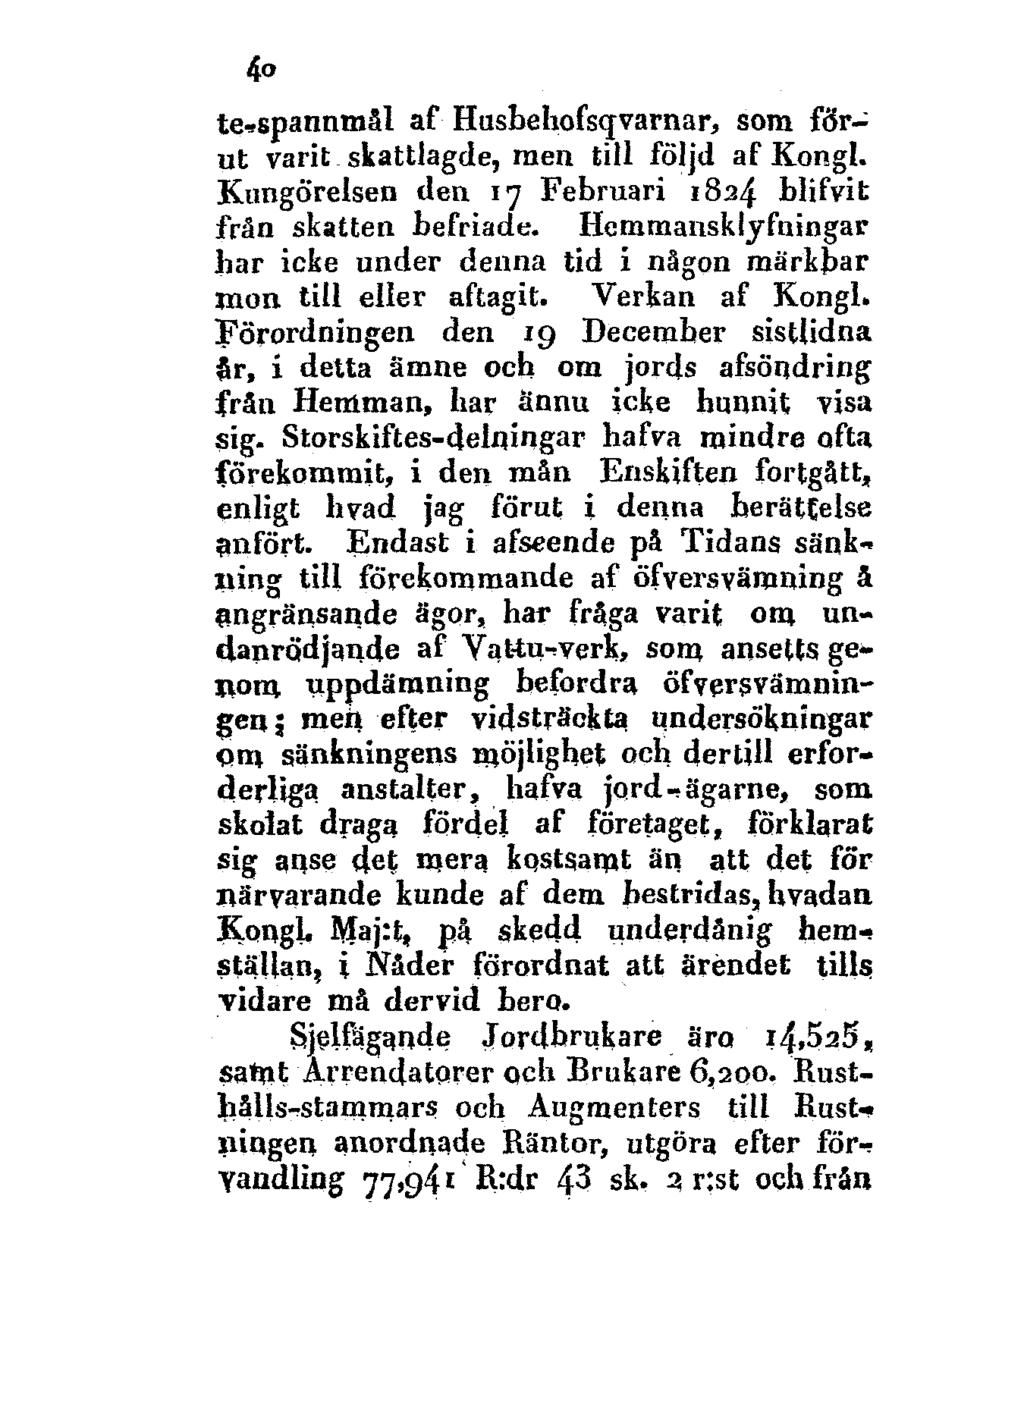 40 te->spannmål af Husbehofsqvarnar, som förut varit skattlagde, men till följd af Kongl. Kungörelsen den 17 Februari 1834 blifvit frän skatten befriade.